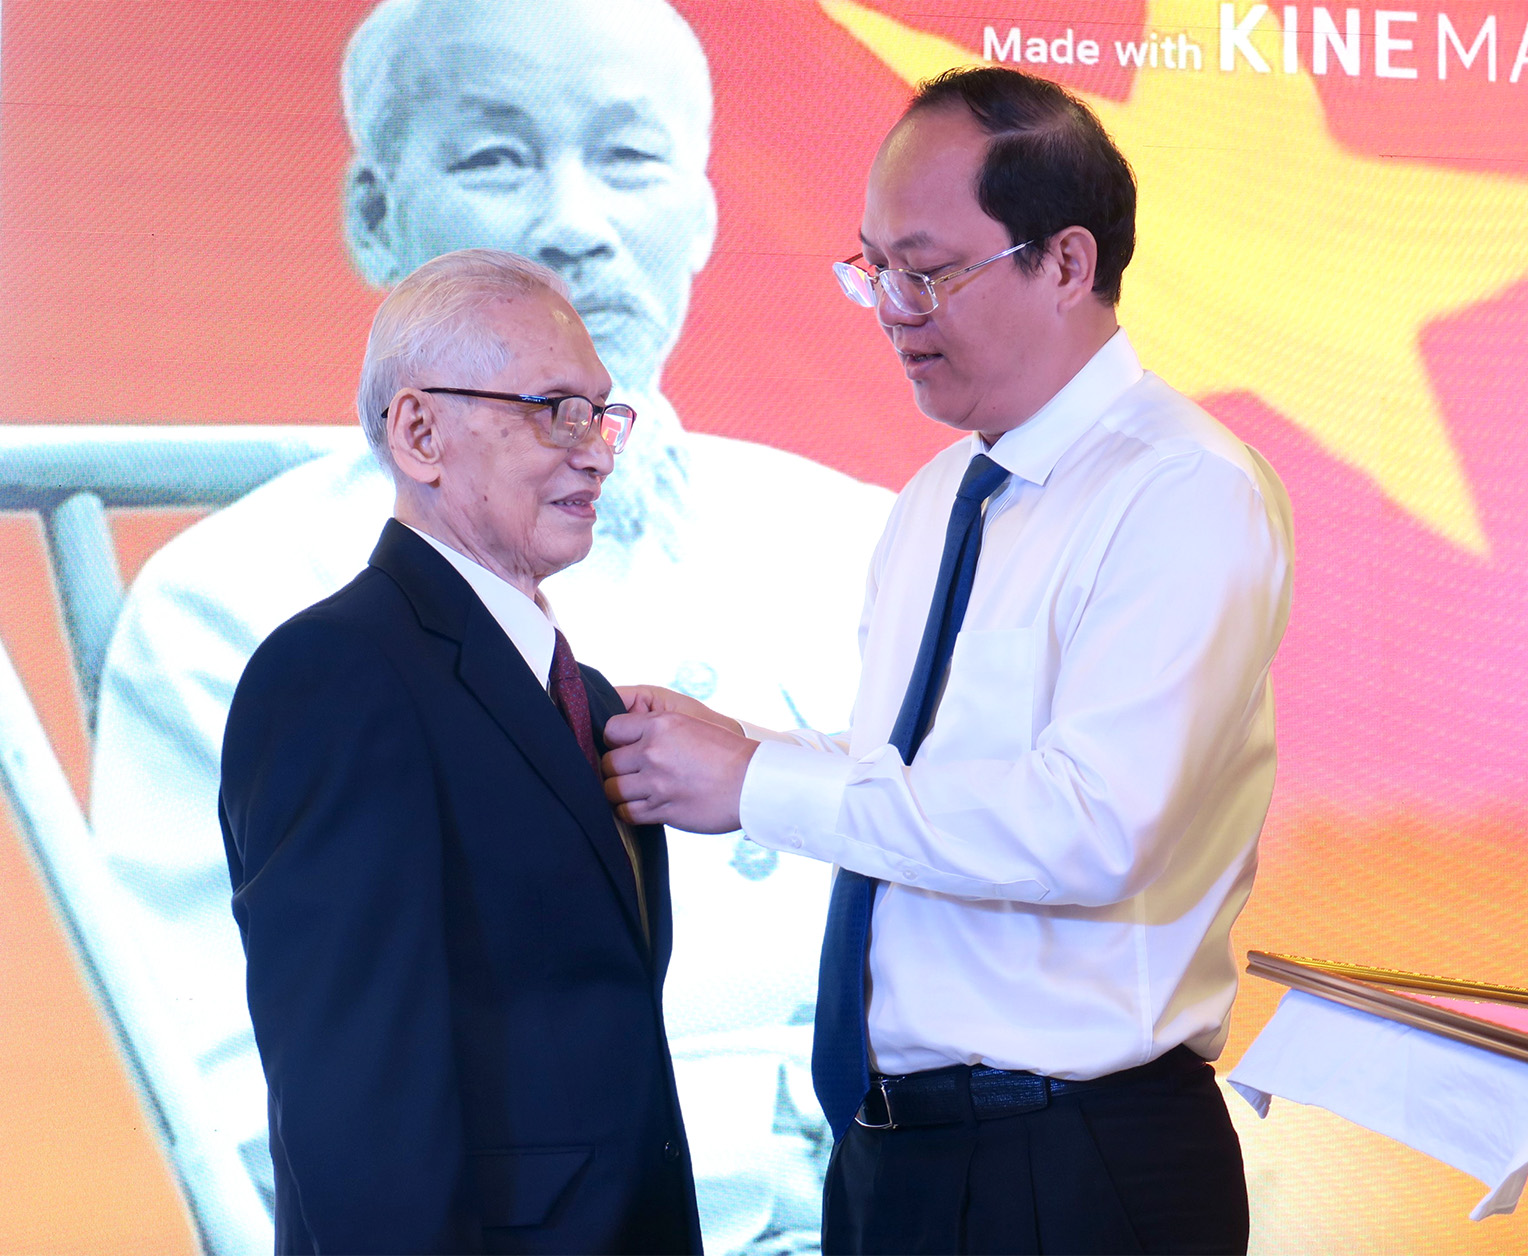 Đồng chí Nguyễn Hồ Hải trao Huy hiệu 75 năm tuổi Đảng cho đồng chí Nguyễn Chí Thành, đảng viên Chi bộ Ngân hàng TMCP Á Châu, thuộc Đảng bộ Khối Ngân hàng TP. Hồ Chí Minh.